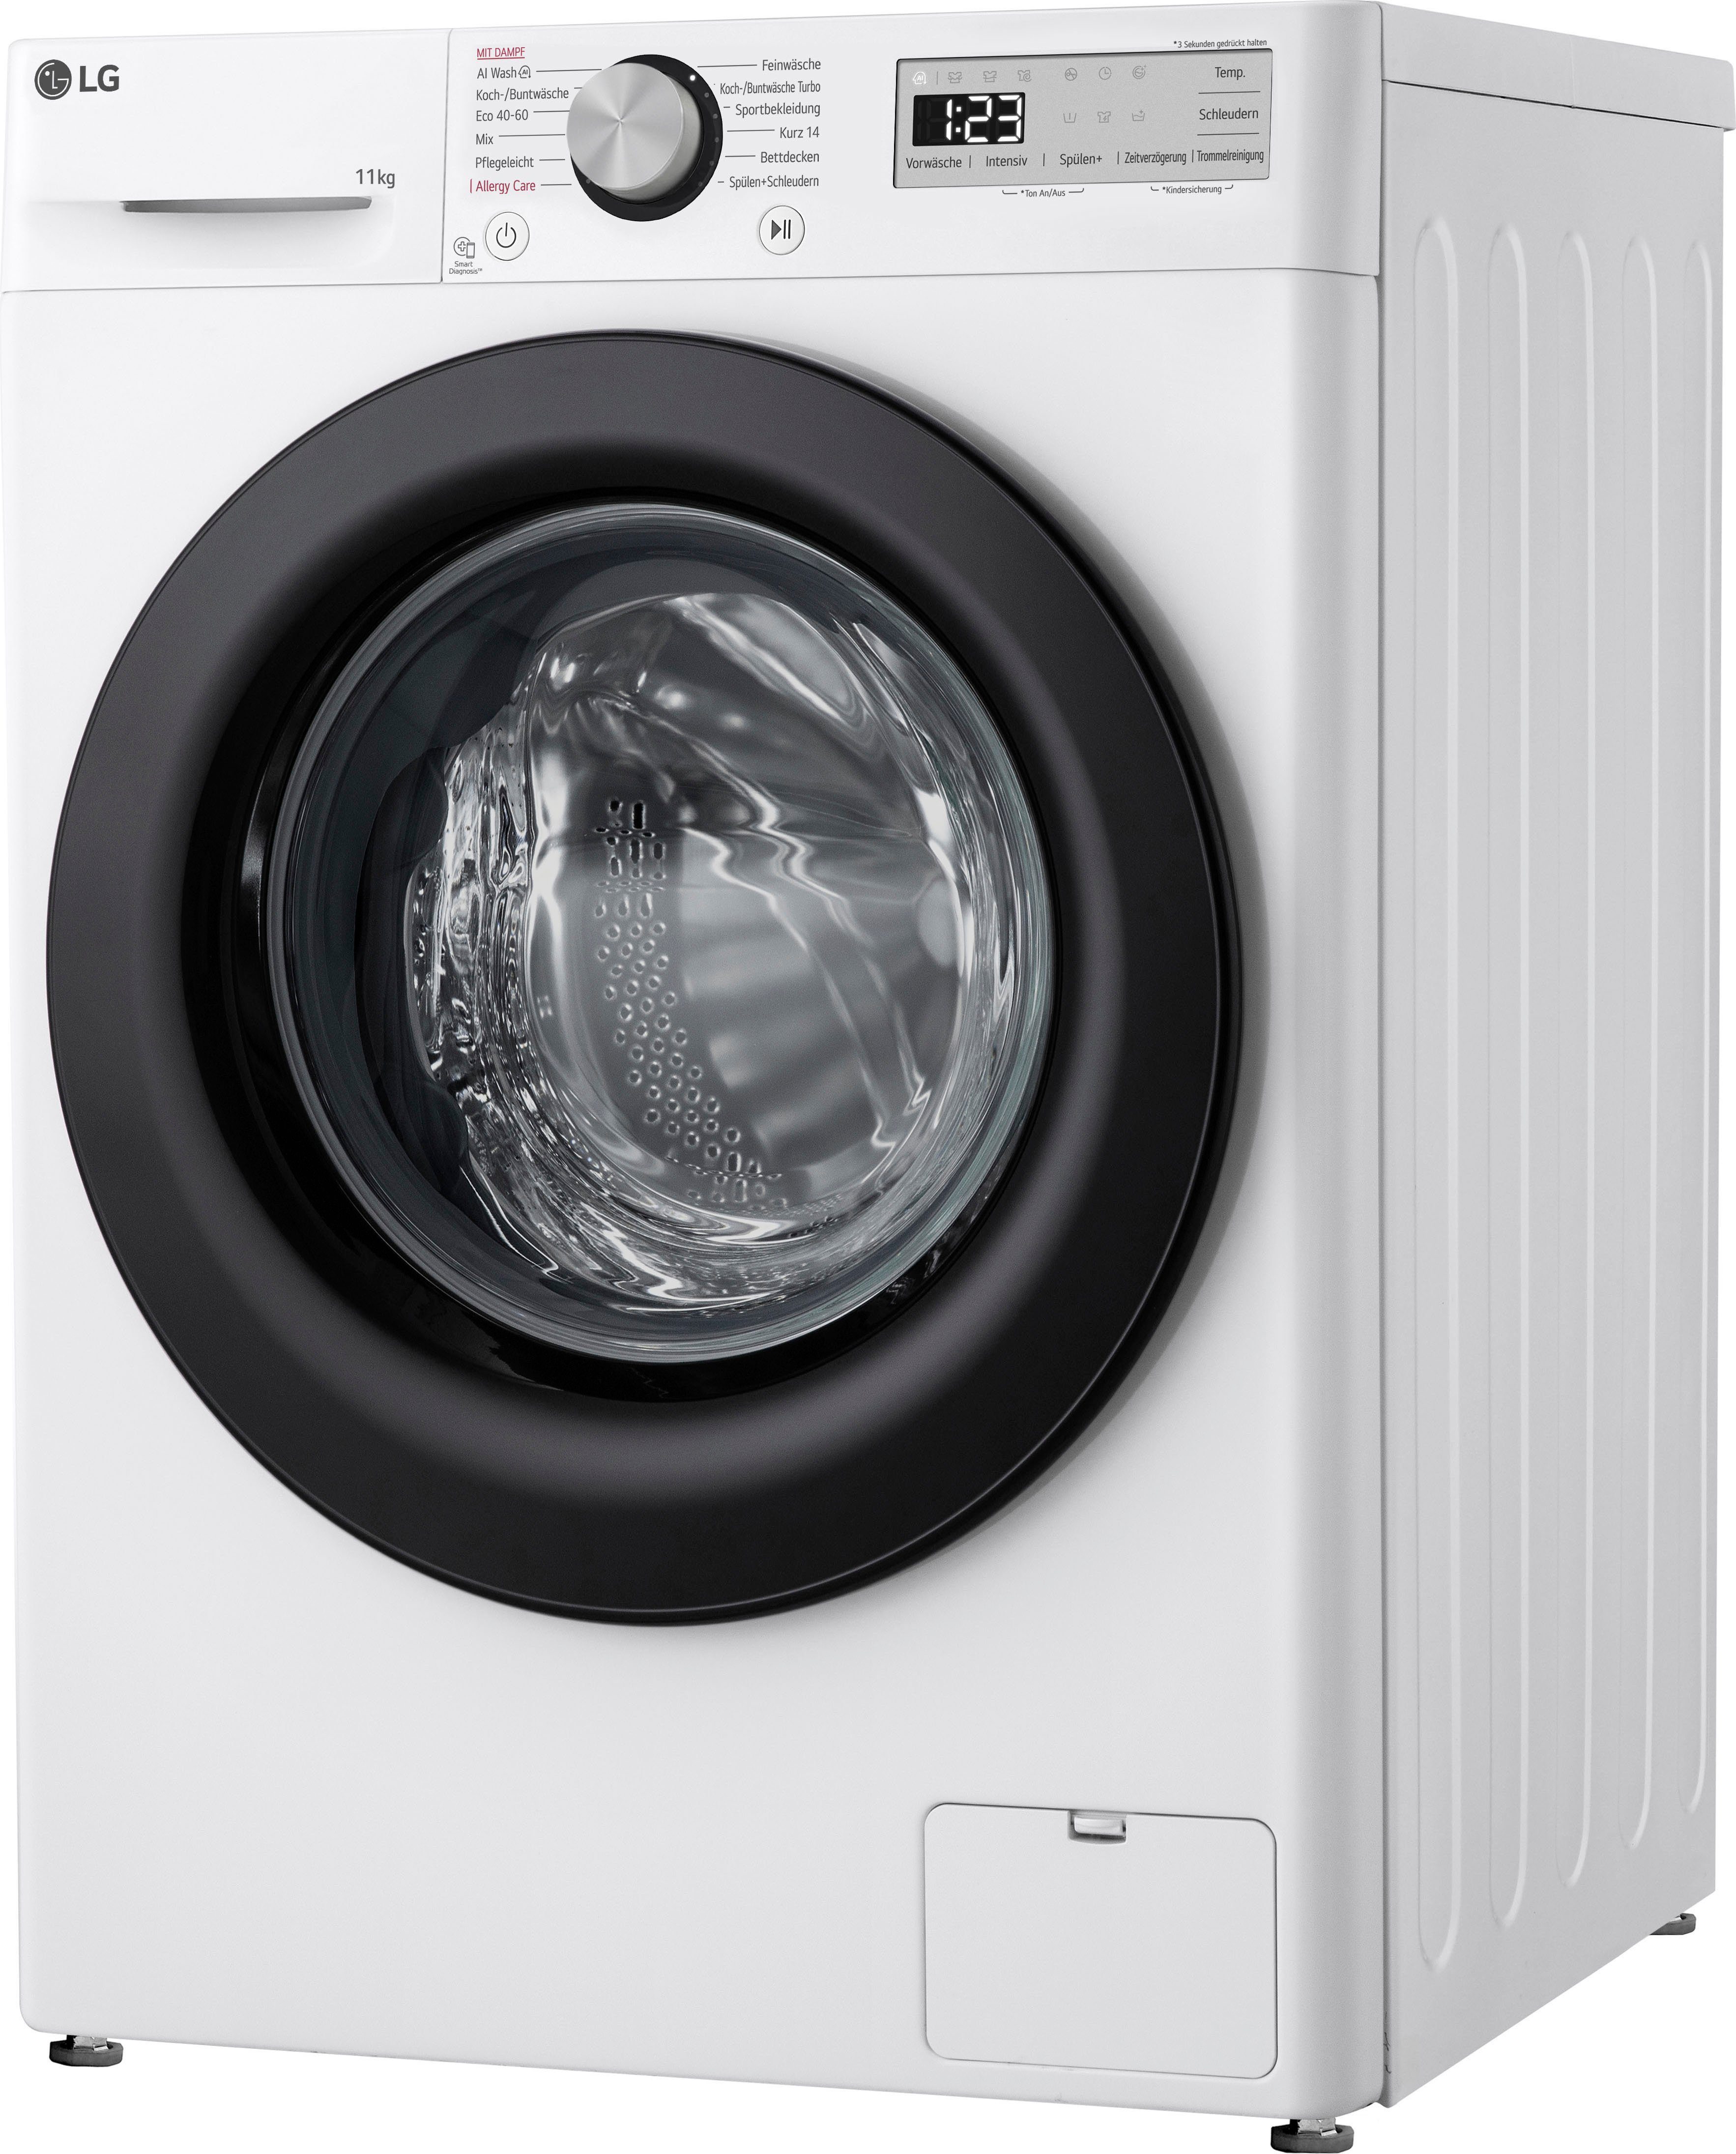 LG Waschmaschine Serie 5 F4WR4911P, Jahre 1400 4 U/min, kg, inklusive Steam-Funktion, 11 Garantie